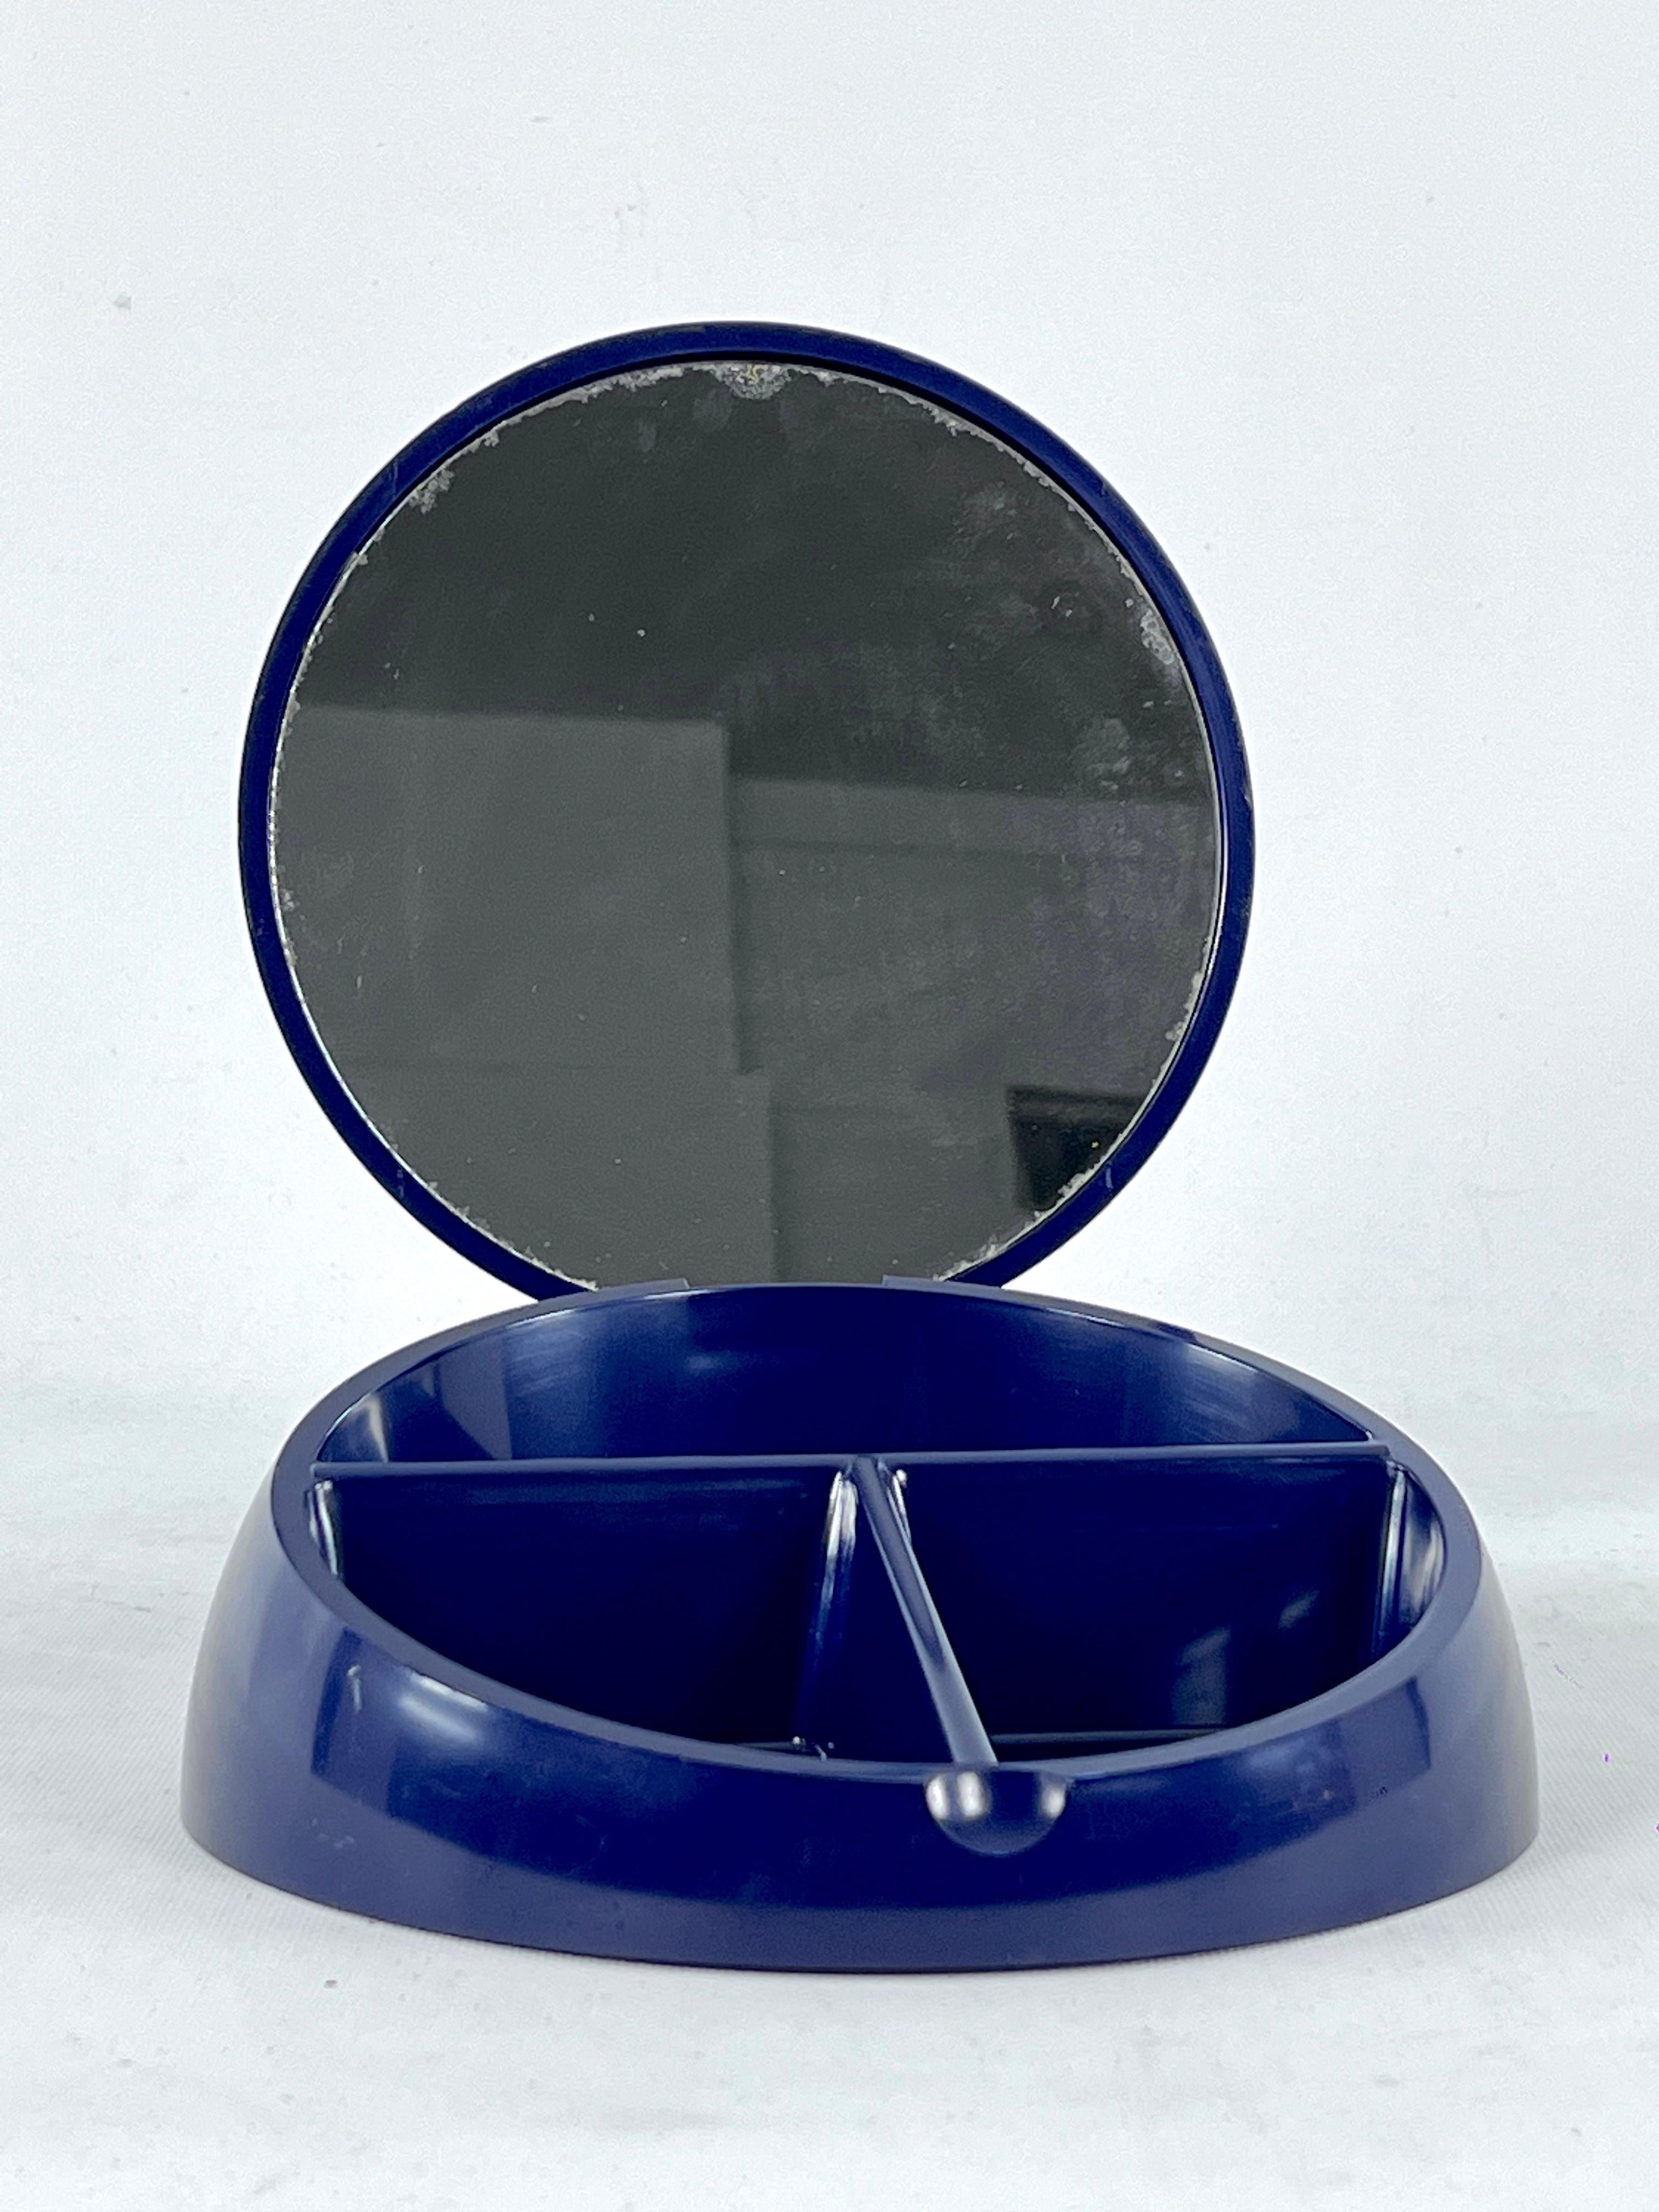 Ausgezeichneter Zustand nie benutzt, aber einige kleine Spur des Alters auf dem Spiegel. Hergestellt aus blauem Kunststoff und produziert von Gedy in den 80er Jahren. Entworfen von Makio Hasuike.
